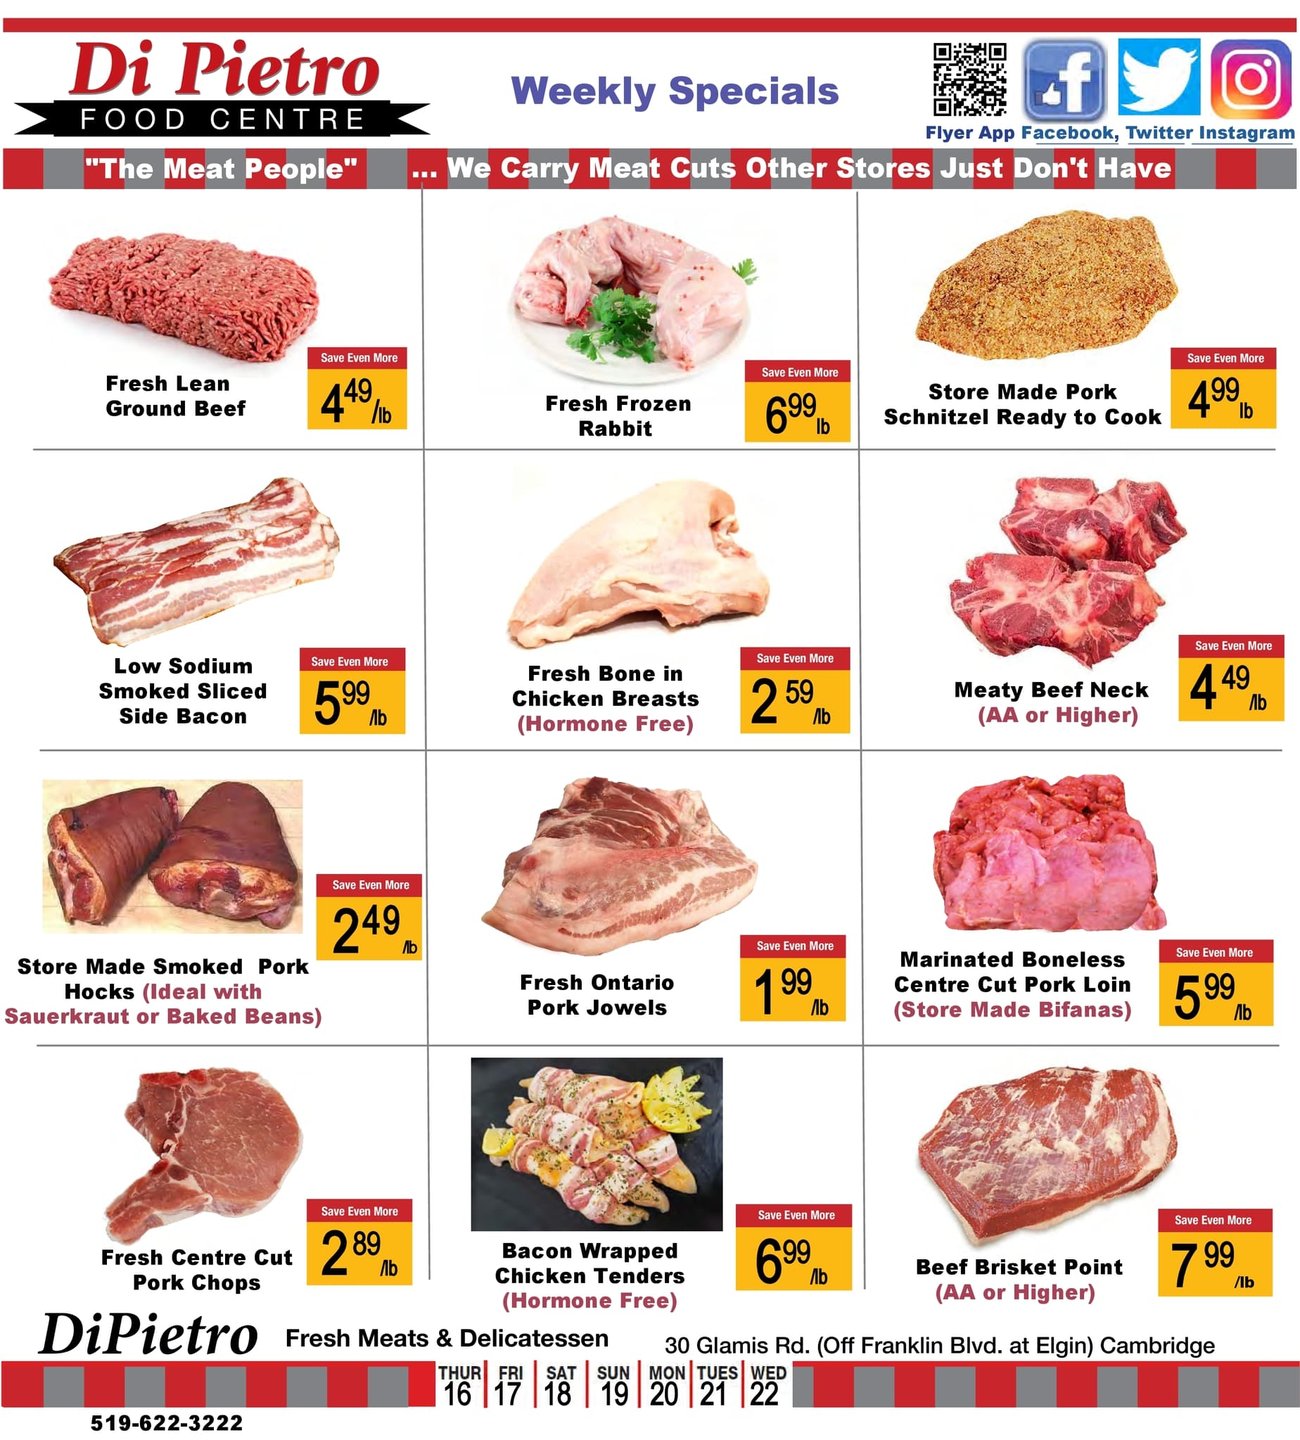 DiPietro - Weekly Flyer Specials - Page 3